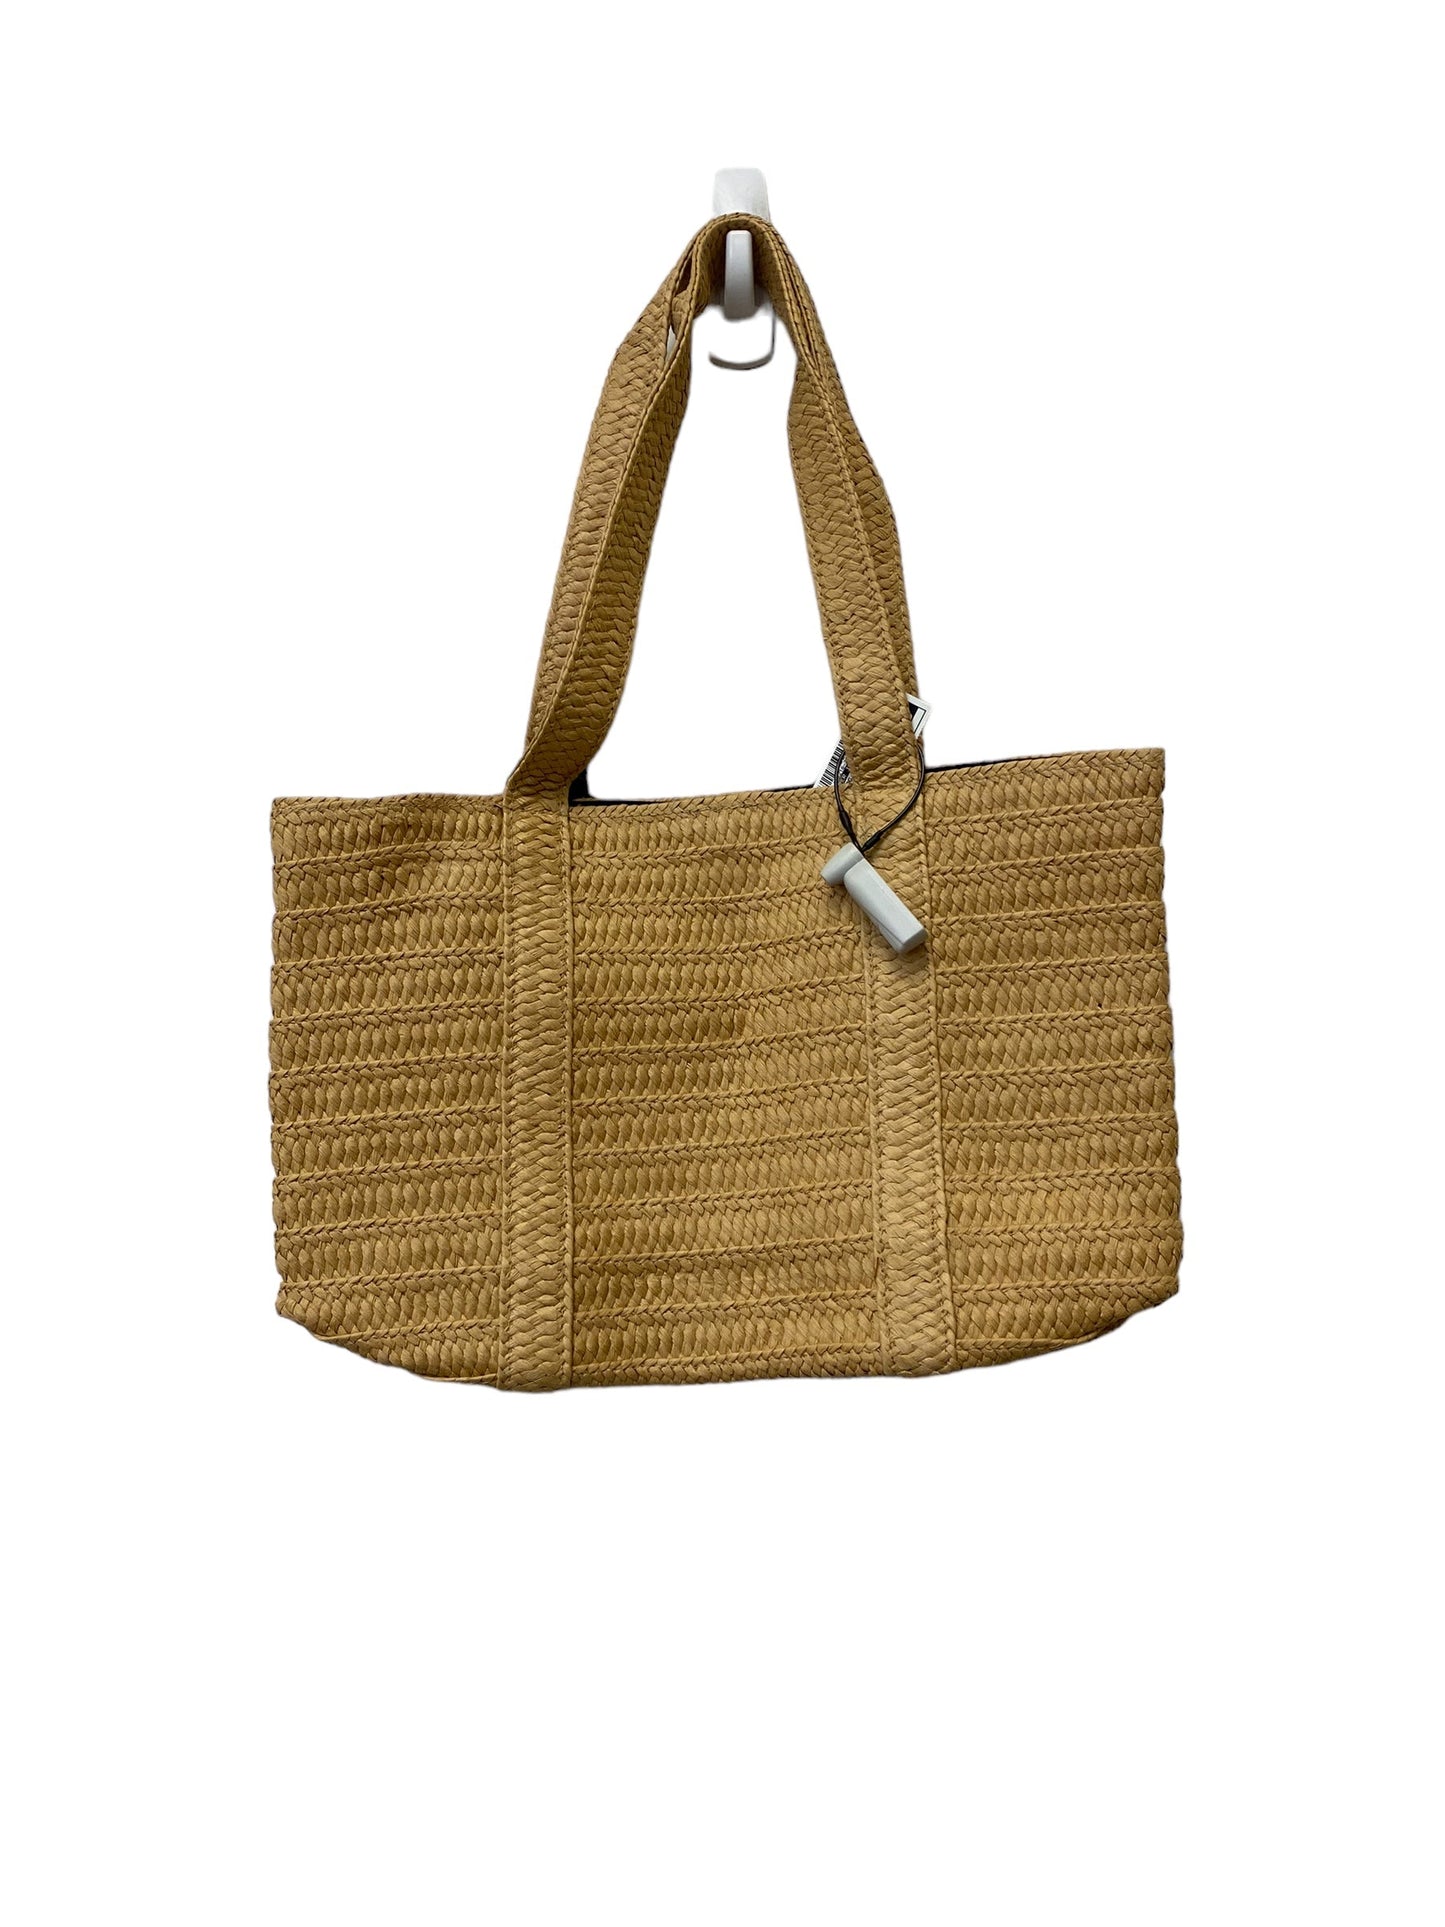 Handbag By Draper James  Size: Medium